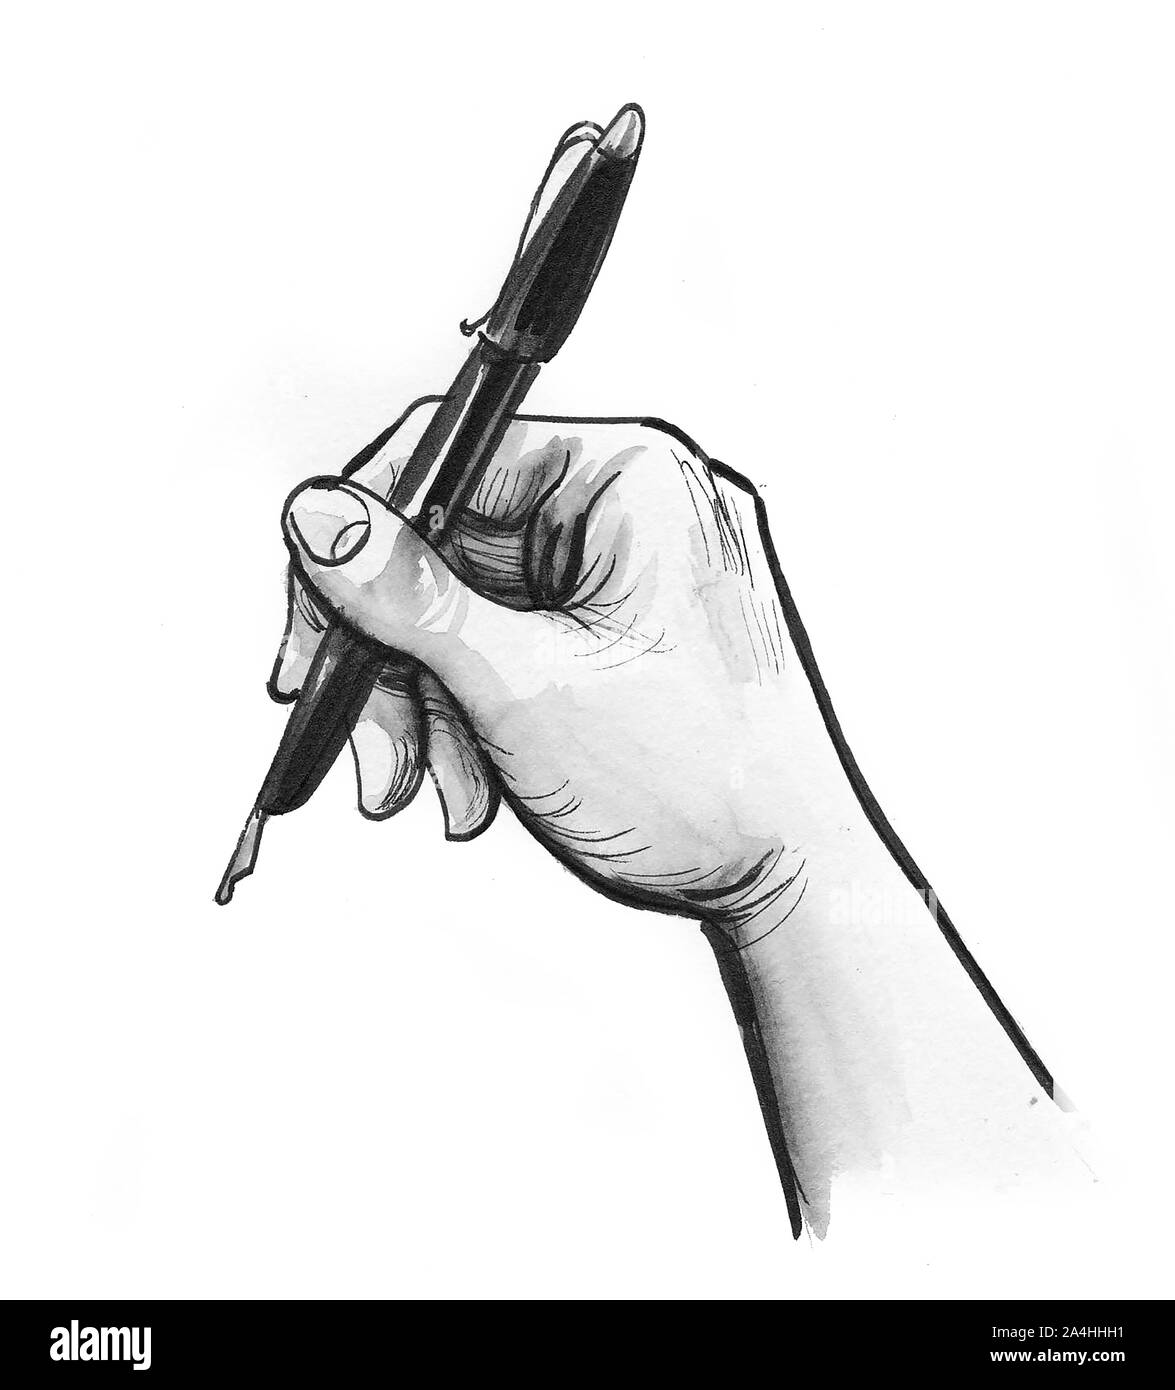 La main avec un stylo. Encre et aquarelle illustration Photo Stock - Alamy